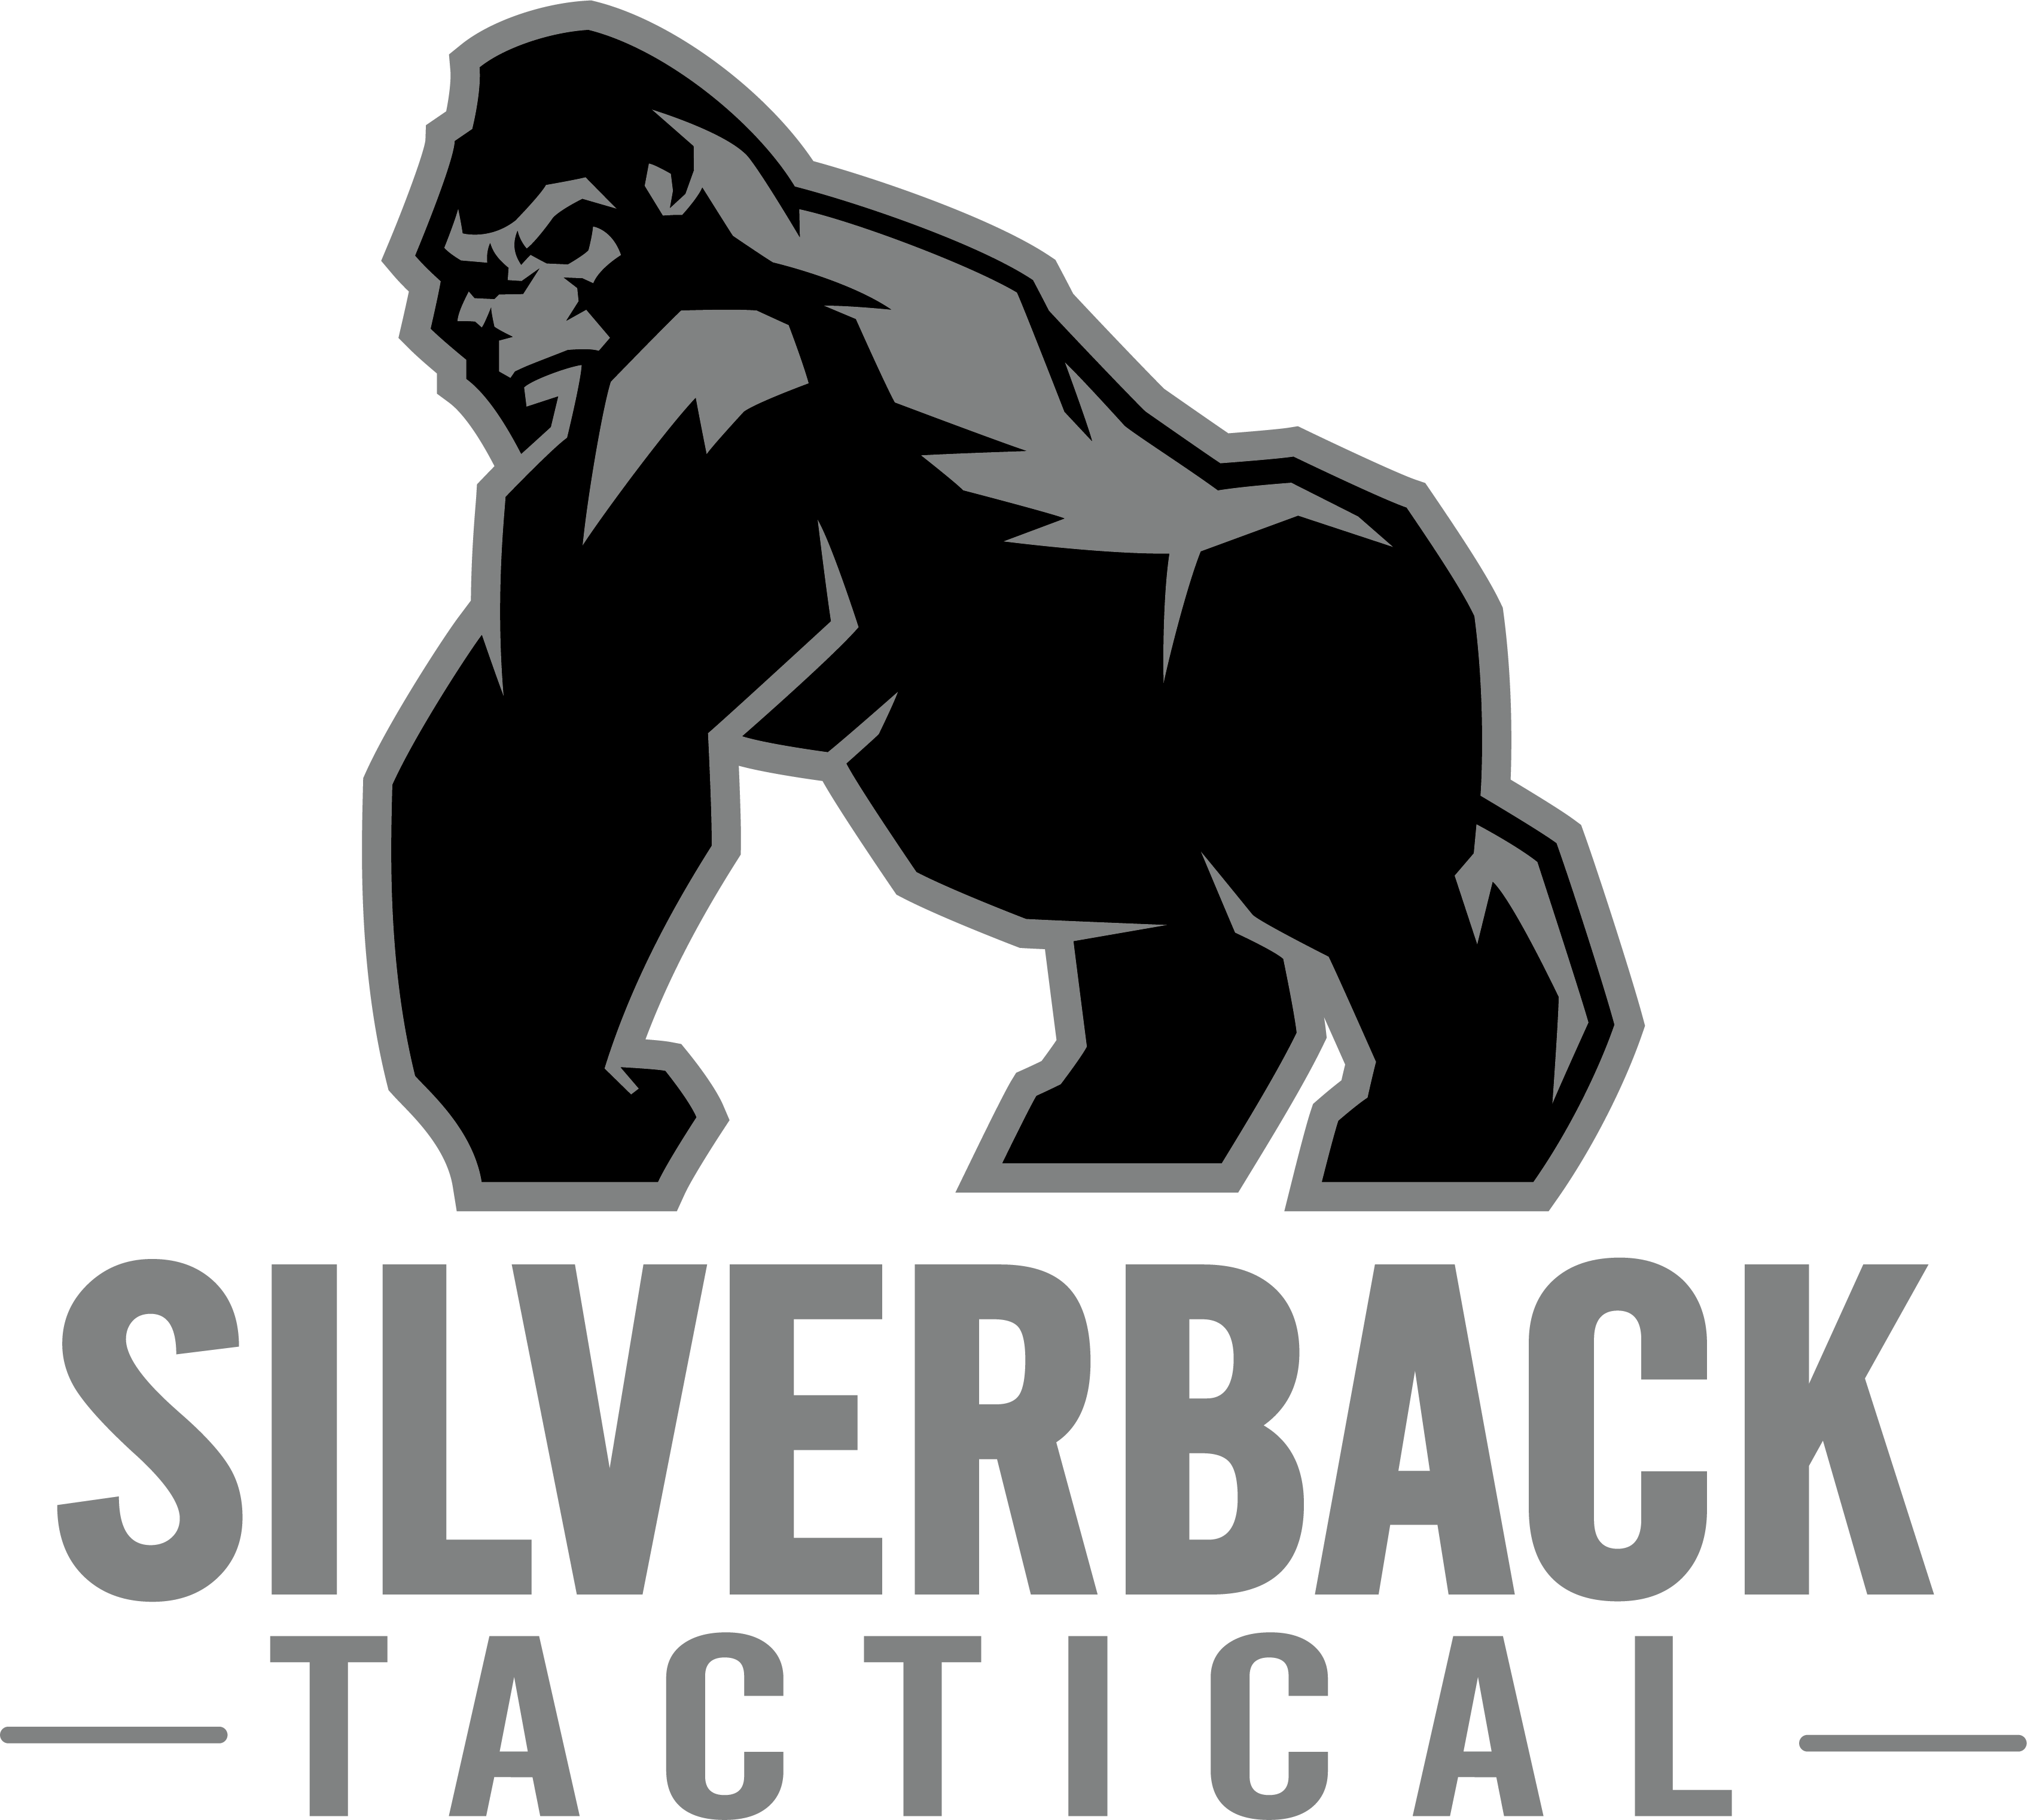 Silverback Tactical LLC